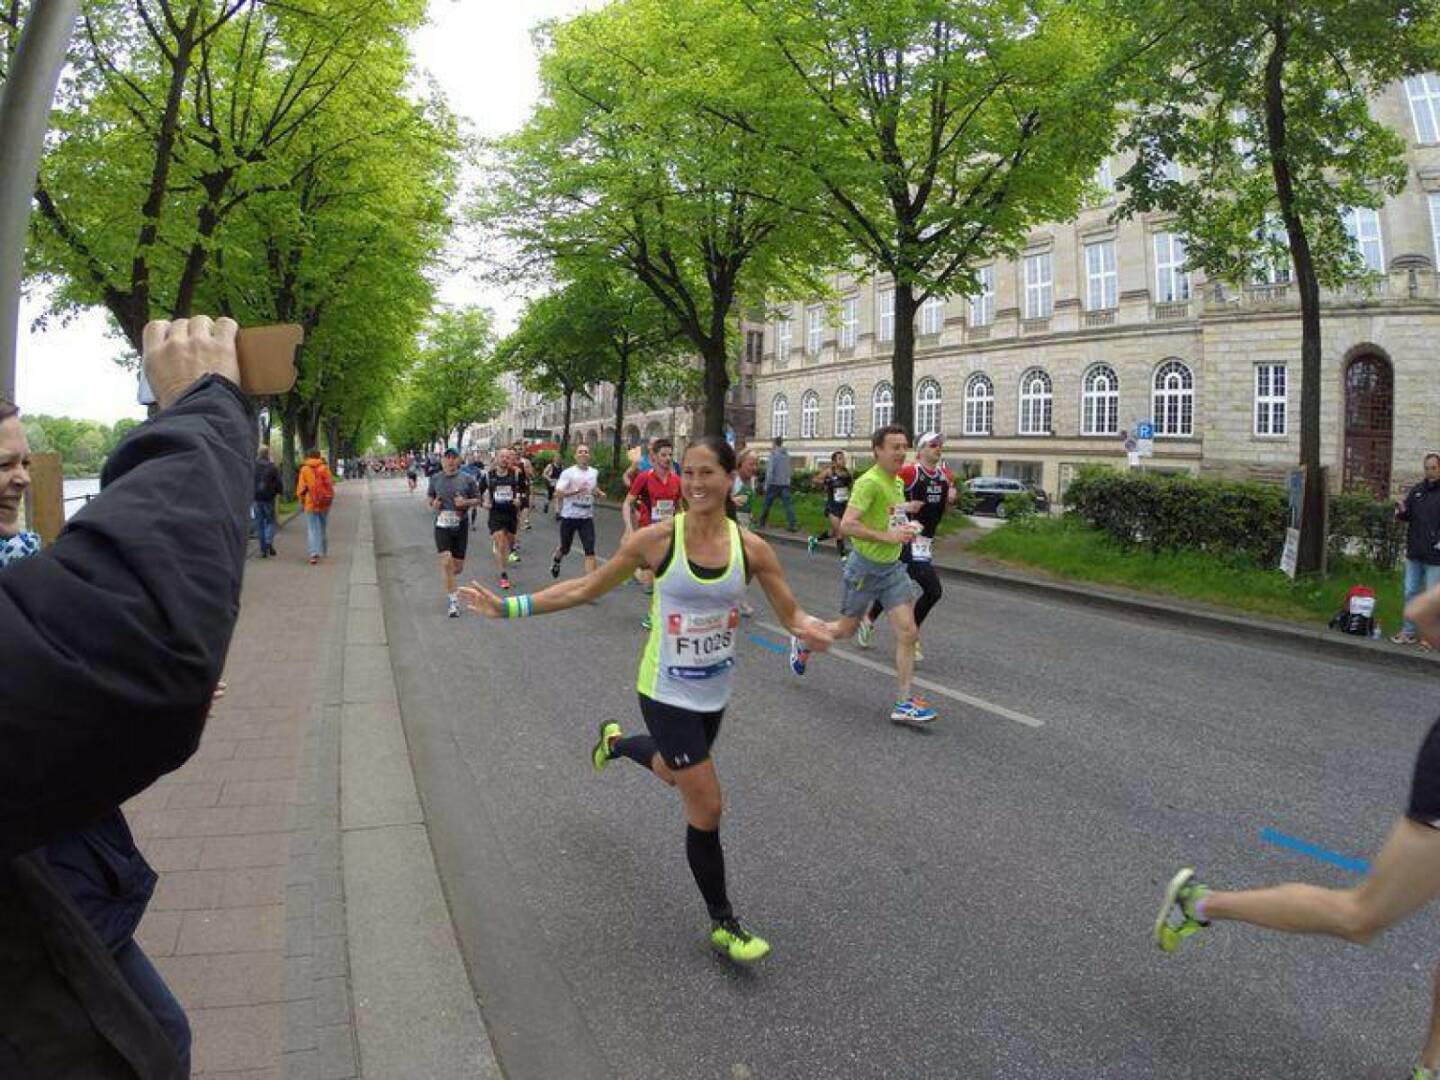 Runplugged Betatesterin beim Hamburg Marathon in knapp mehr als 3h im Ziel https://www.facebook.com/